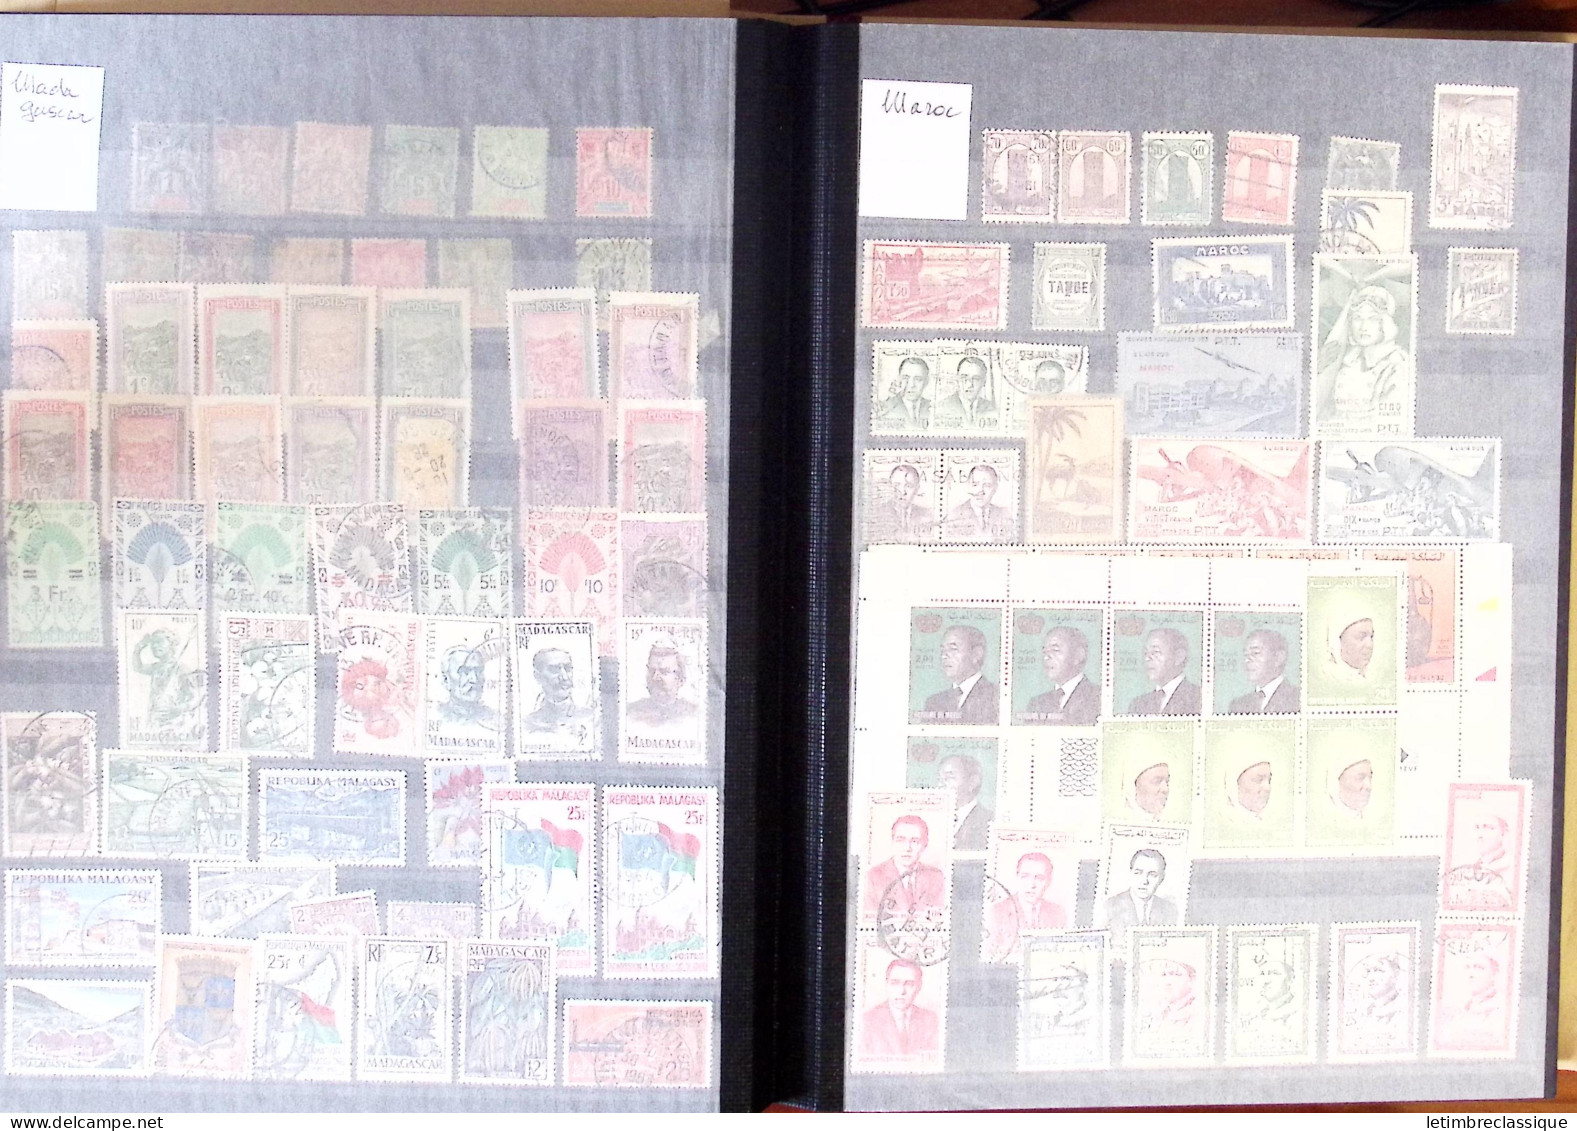 **,*,obl 1885-2007, Collection en un classeur, de timbres des COLONIES, blocs, toutes époques, neufs et obl., dont Algér